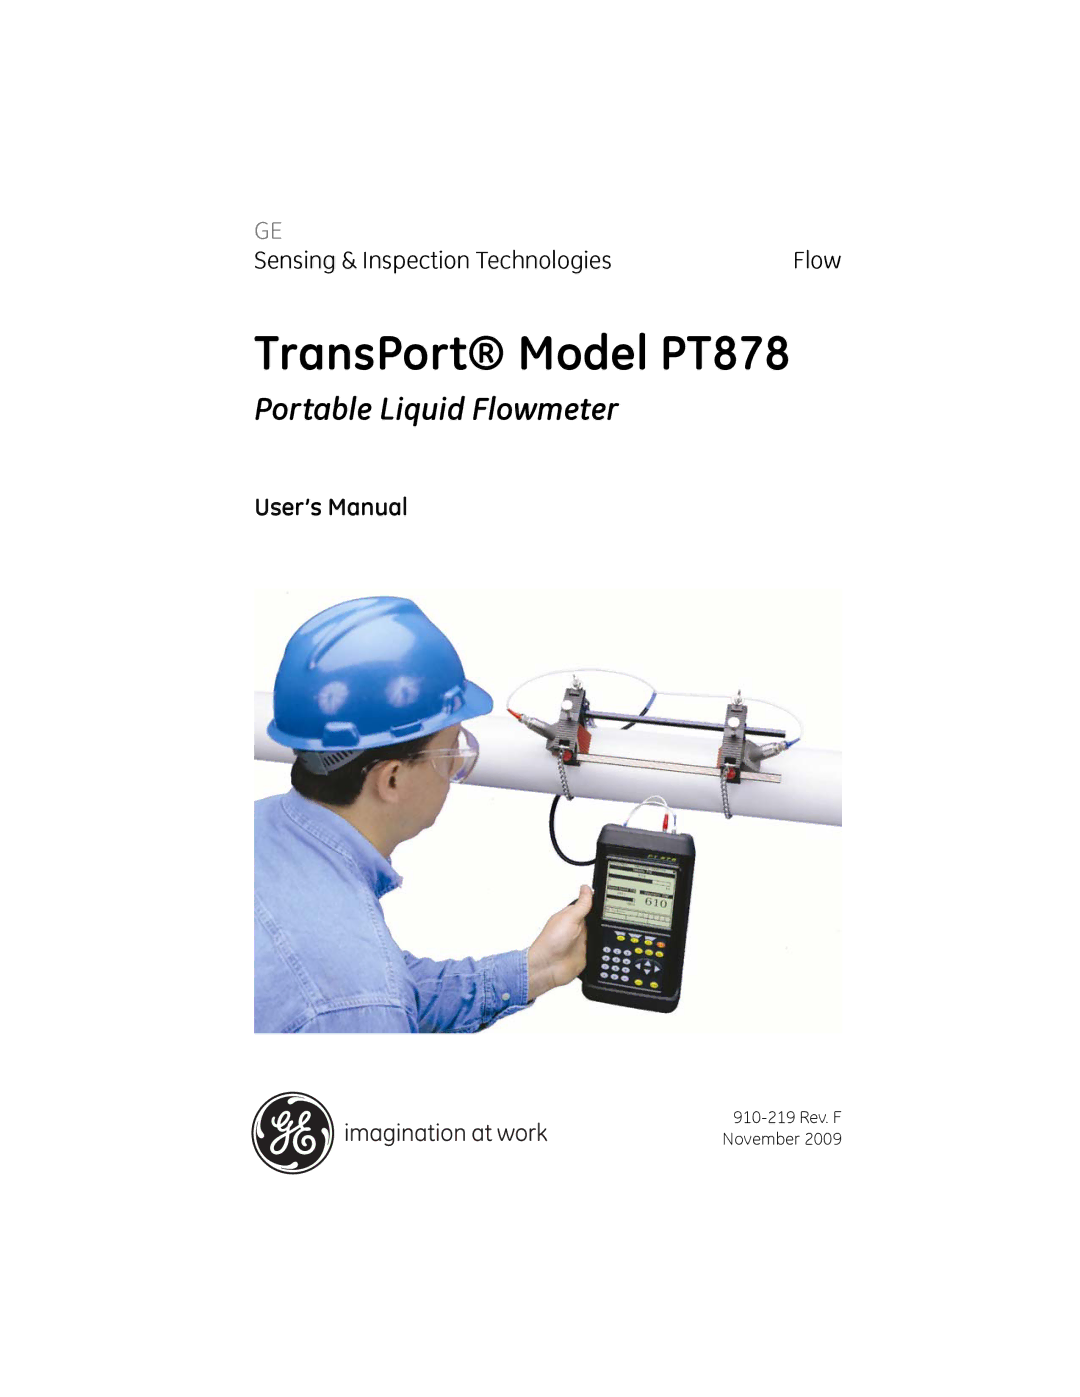 GE user manual TransPort Model PT878, User’s Manual 